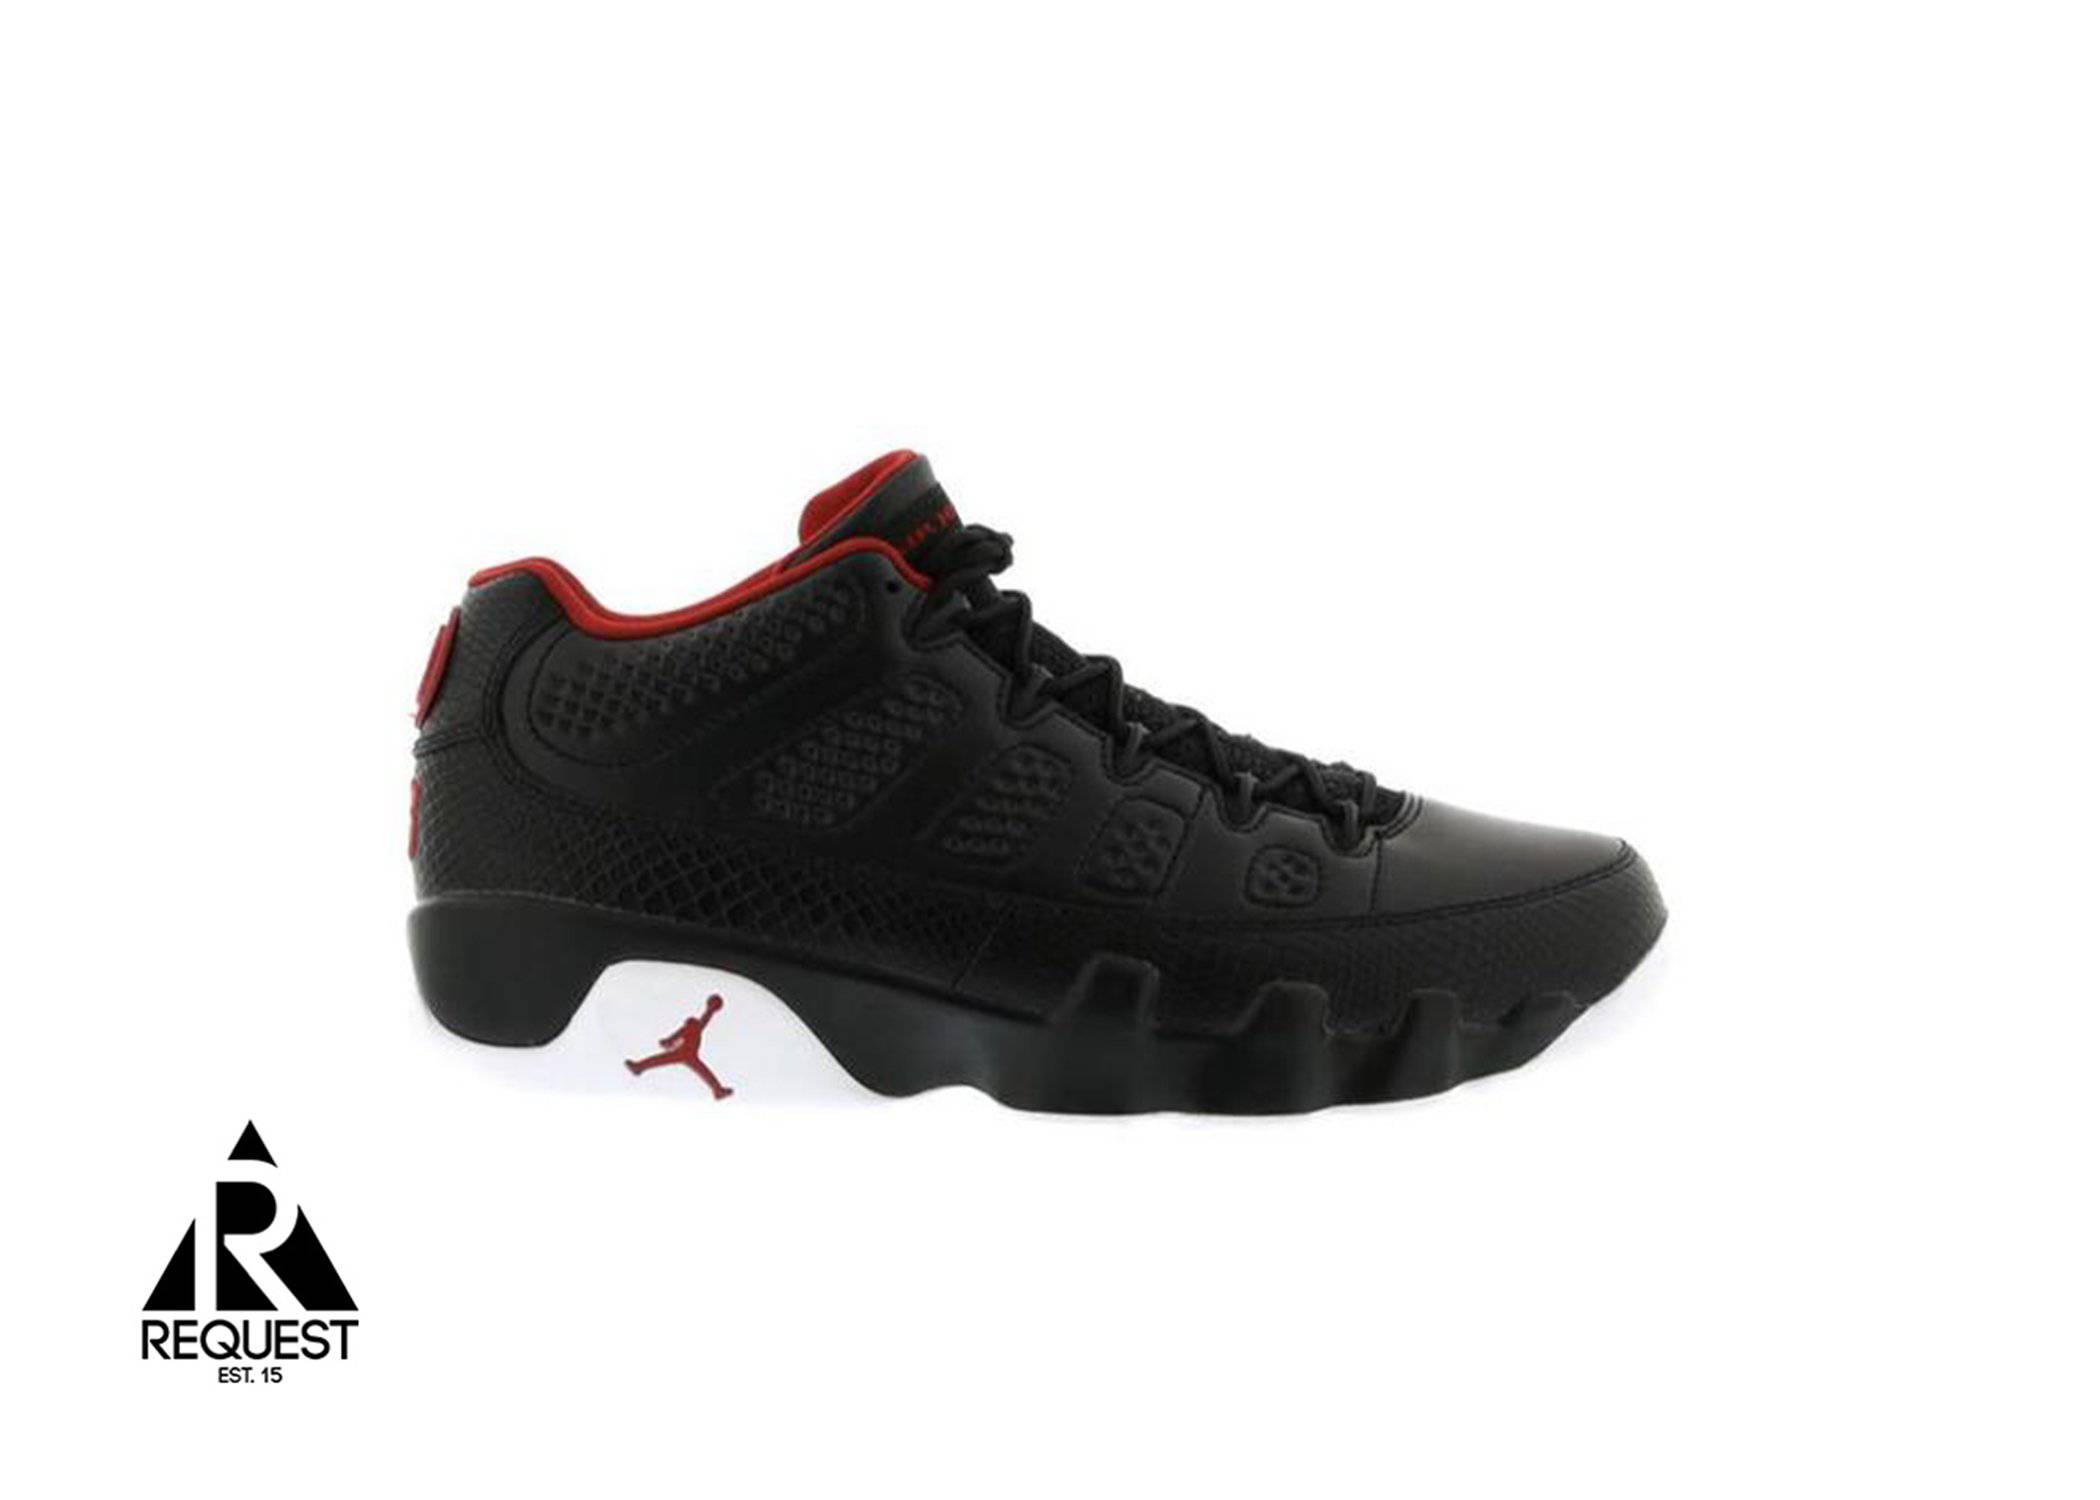 Air Jordan 9 Retro Low “Snakeskin”